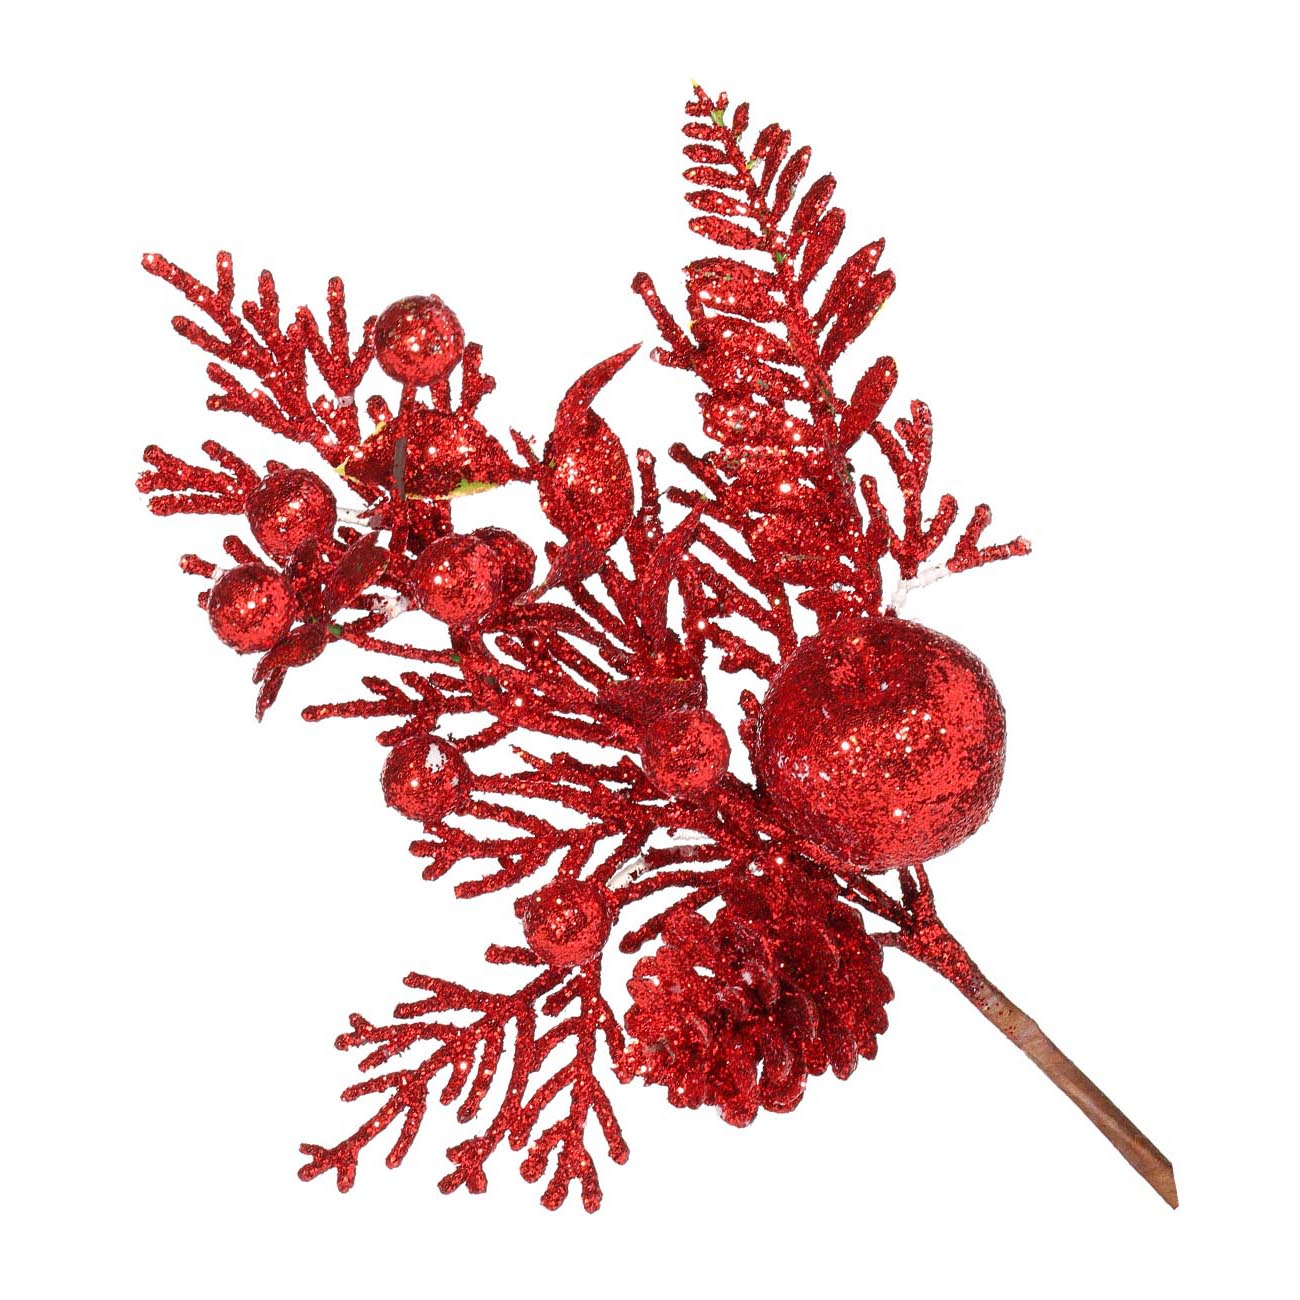 Ветка декоративная, 23 см, пенопласт, красная, Яблоко с ягодами, Bright decor - фото 1